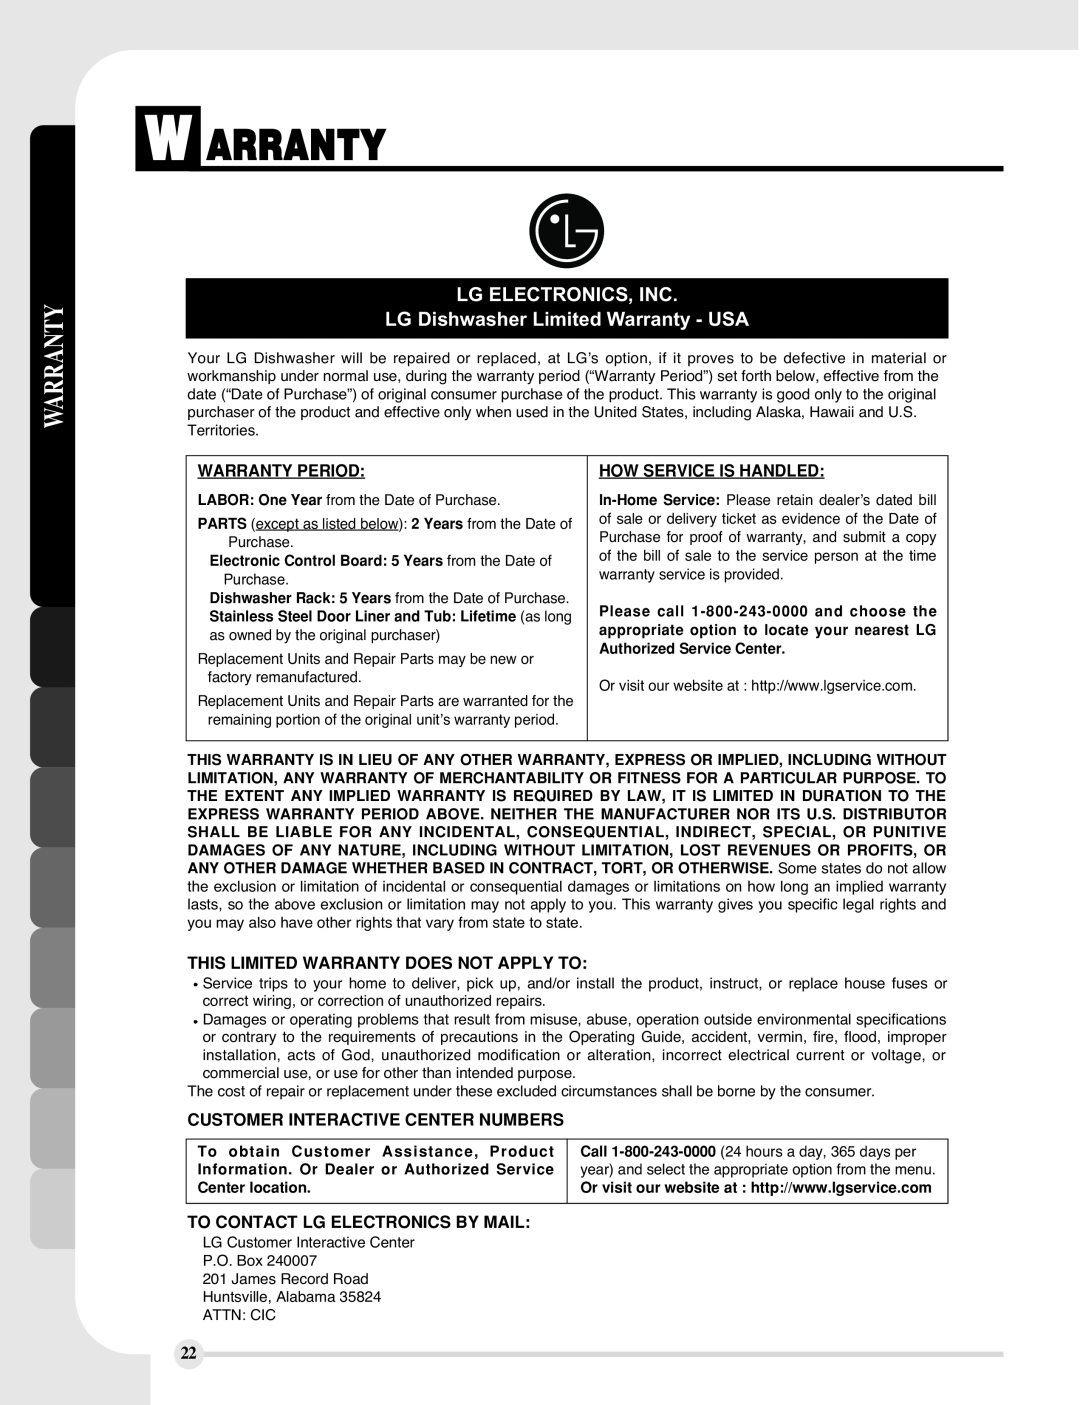 LG Electronics LDF9810WW manual W Arranty, LG ELECTRONICS, INC LG Dishwasher Limited Warranty - USA, Warranty Period 